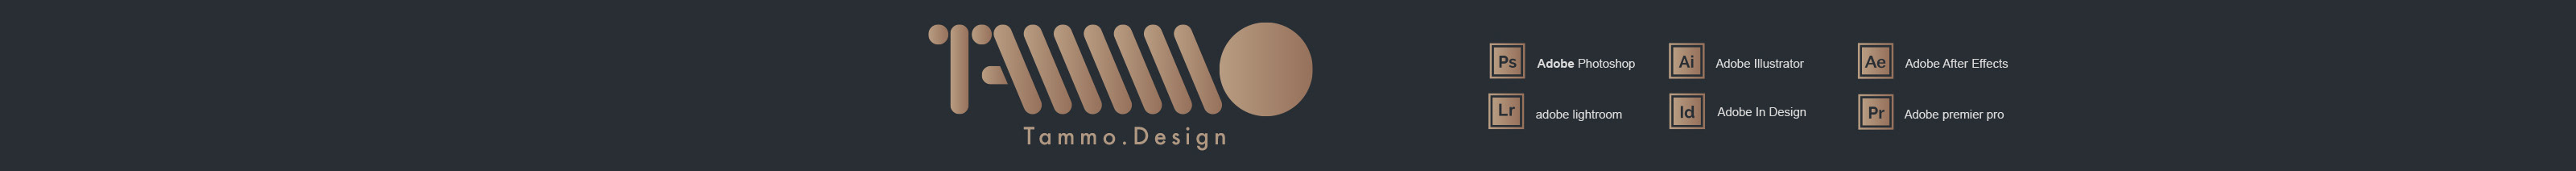 Tammo -Design's profile banner